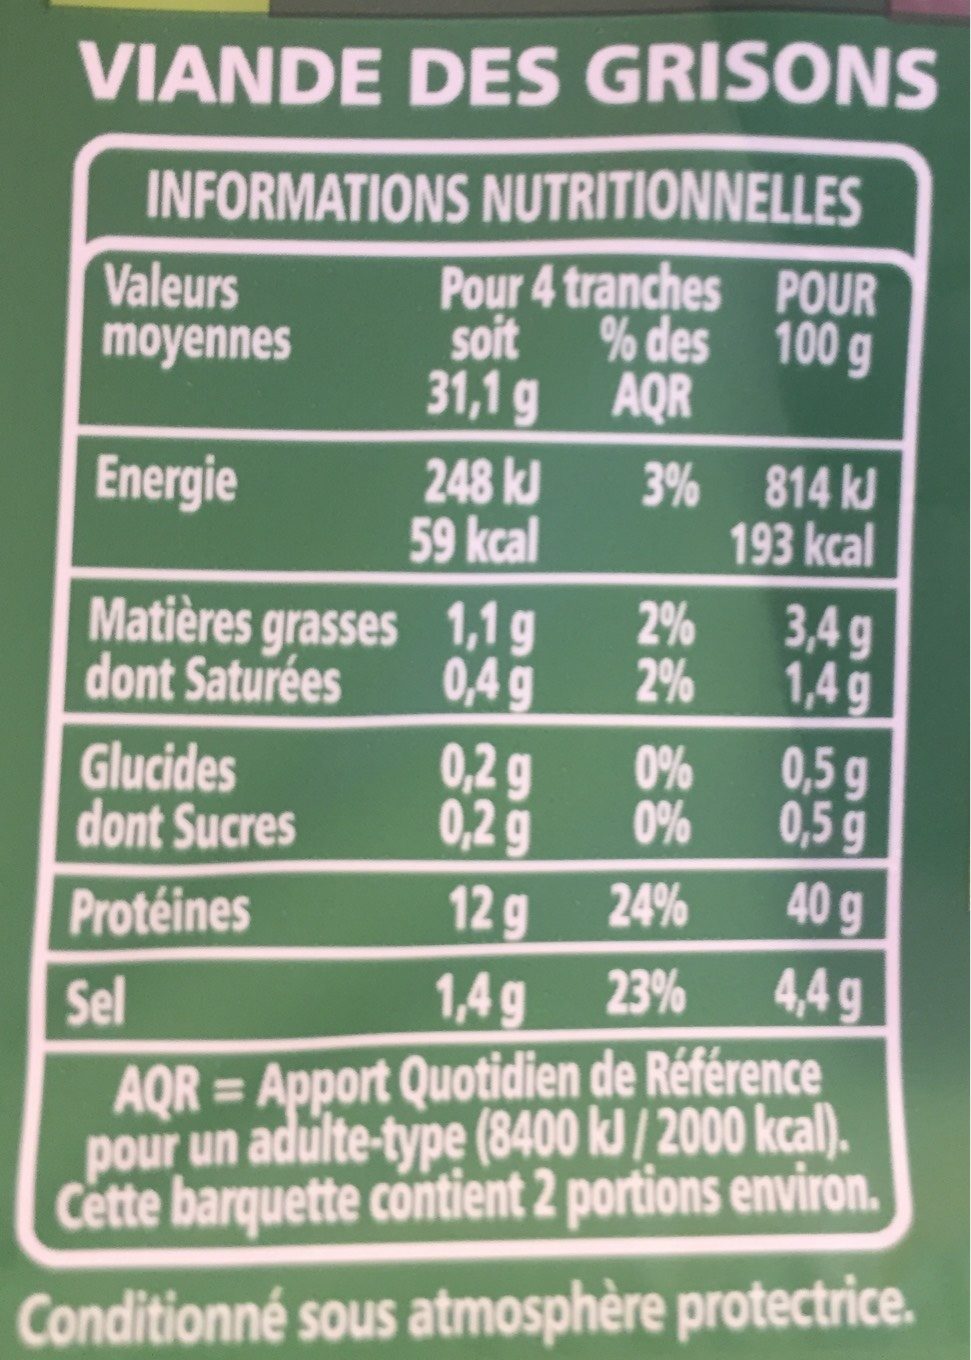 Viande des Grisons 9 tranches - Nutrition facts - fr